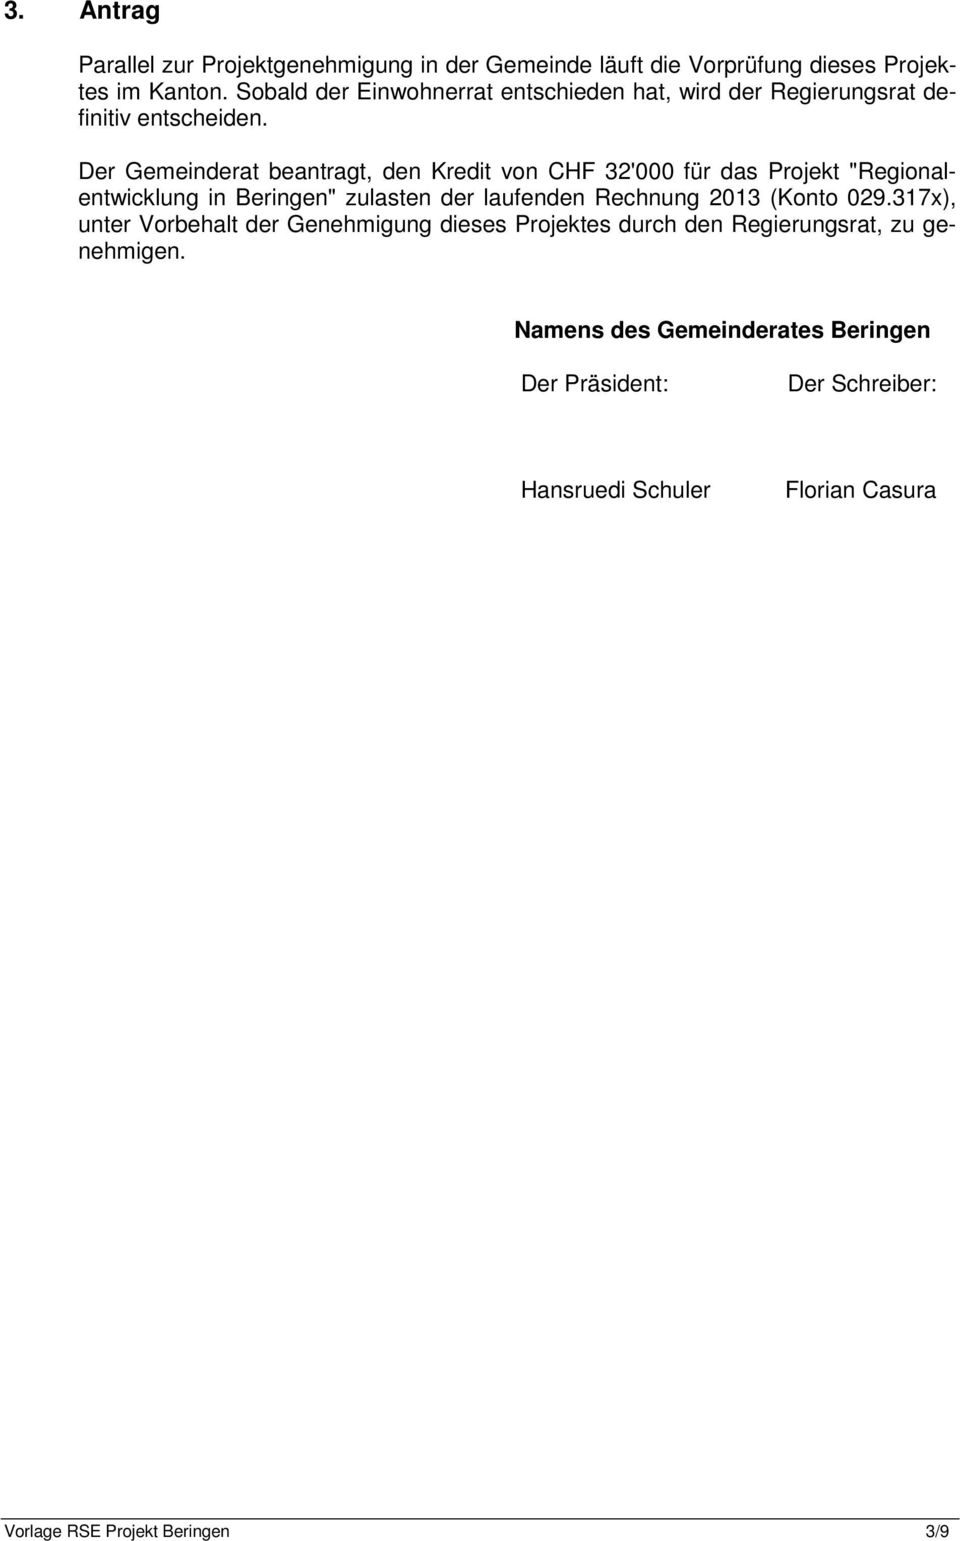 Der Gemeinderat beantragt, den Kredit von CHF 32'000 für das Projekt "Regionalentwicklung in Beringen" zulasten der laufenden Rechnung 2013